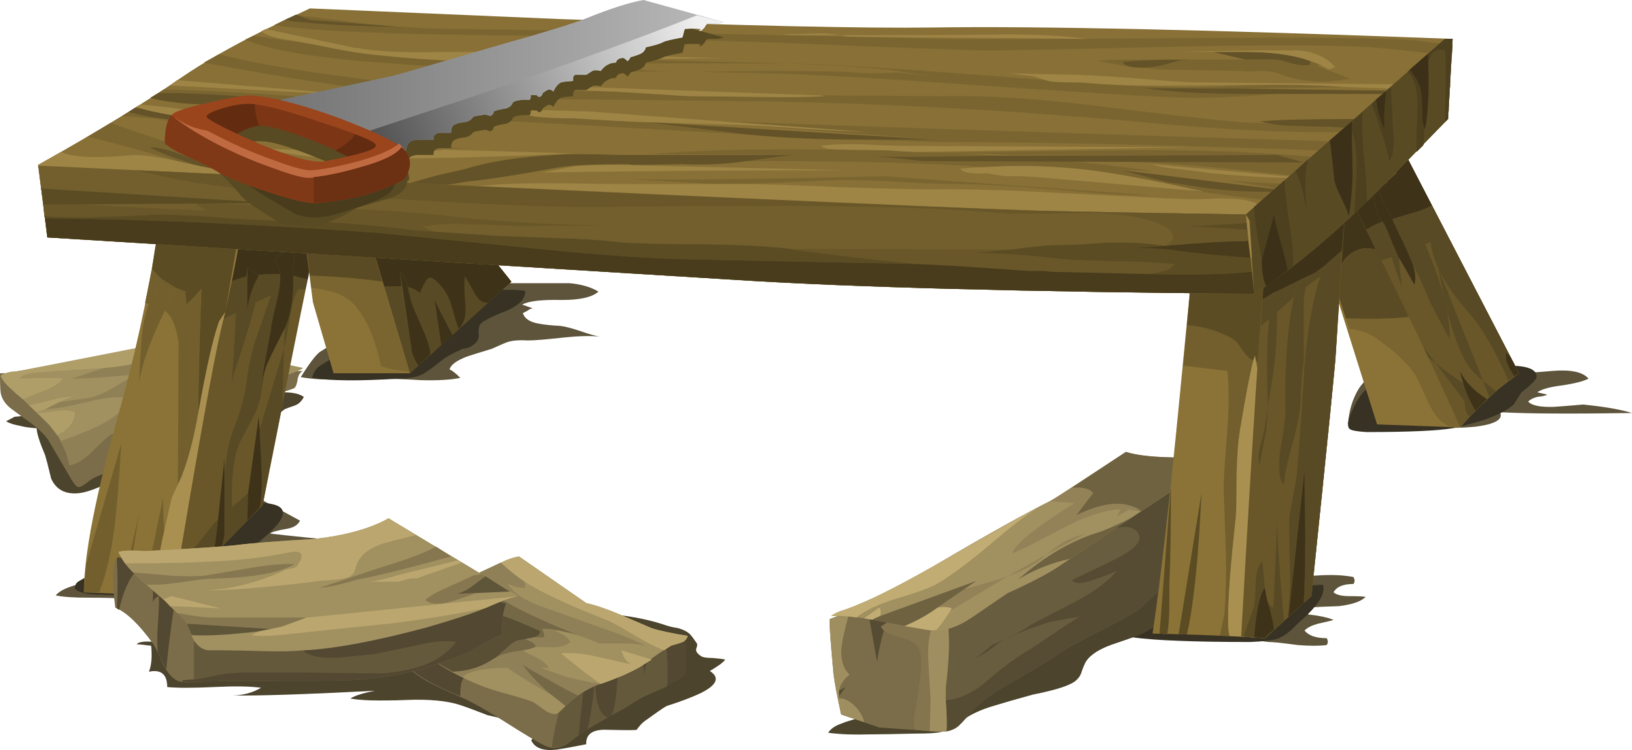 Table,Desk,Angle